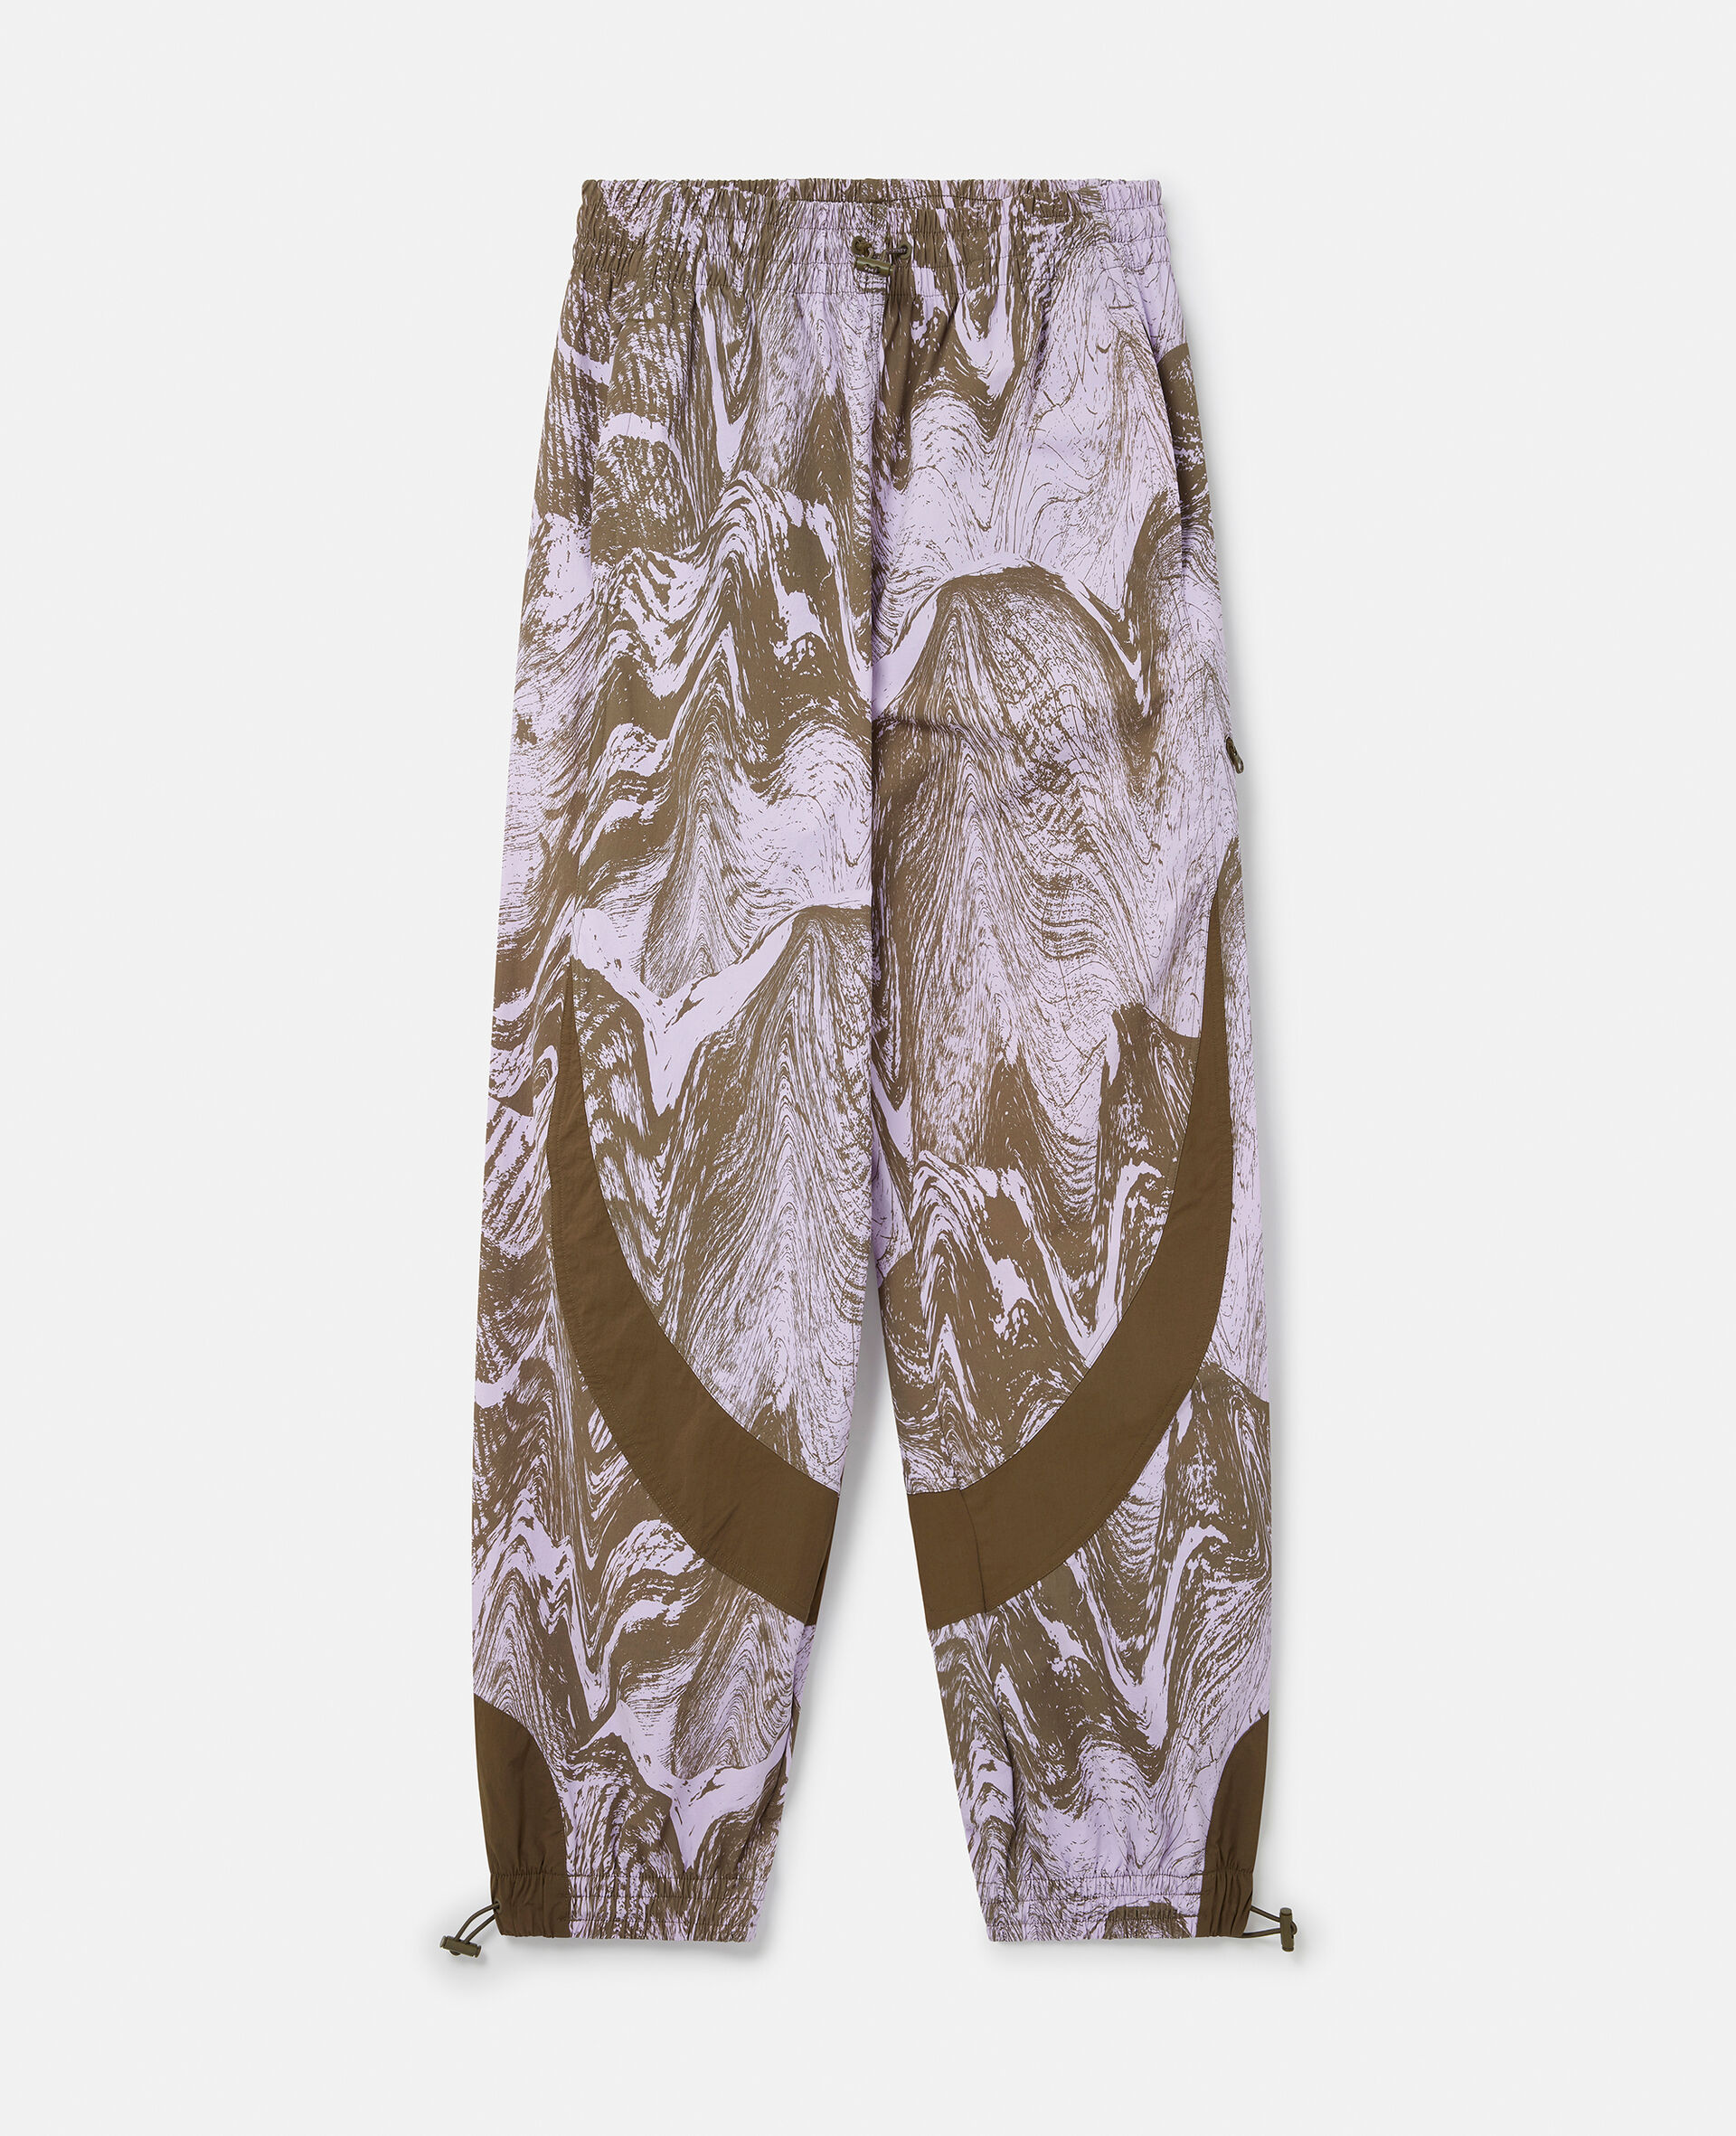 Pantalon de survêtement tissé à imprimé bois moiré-Fantaisie-large image number 0